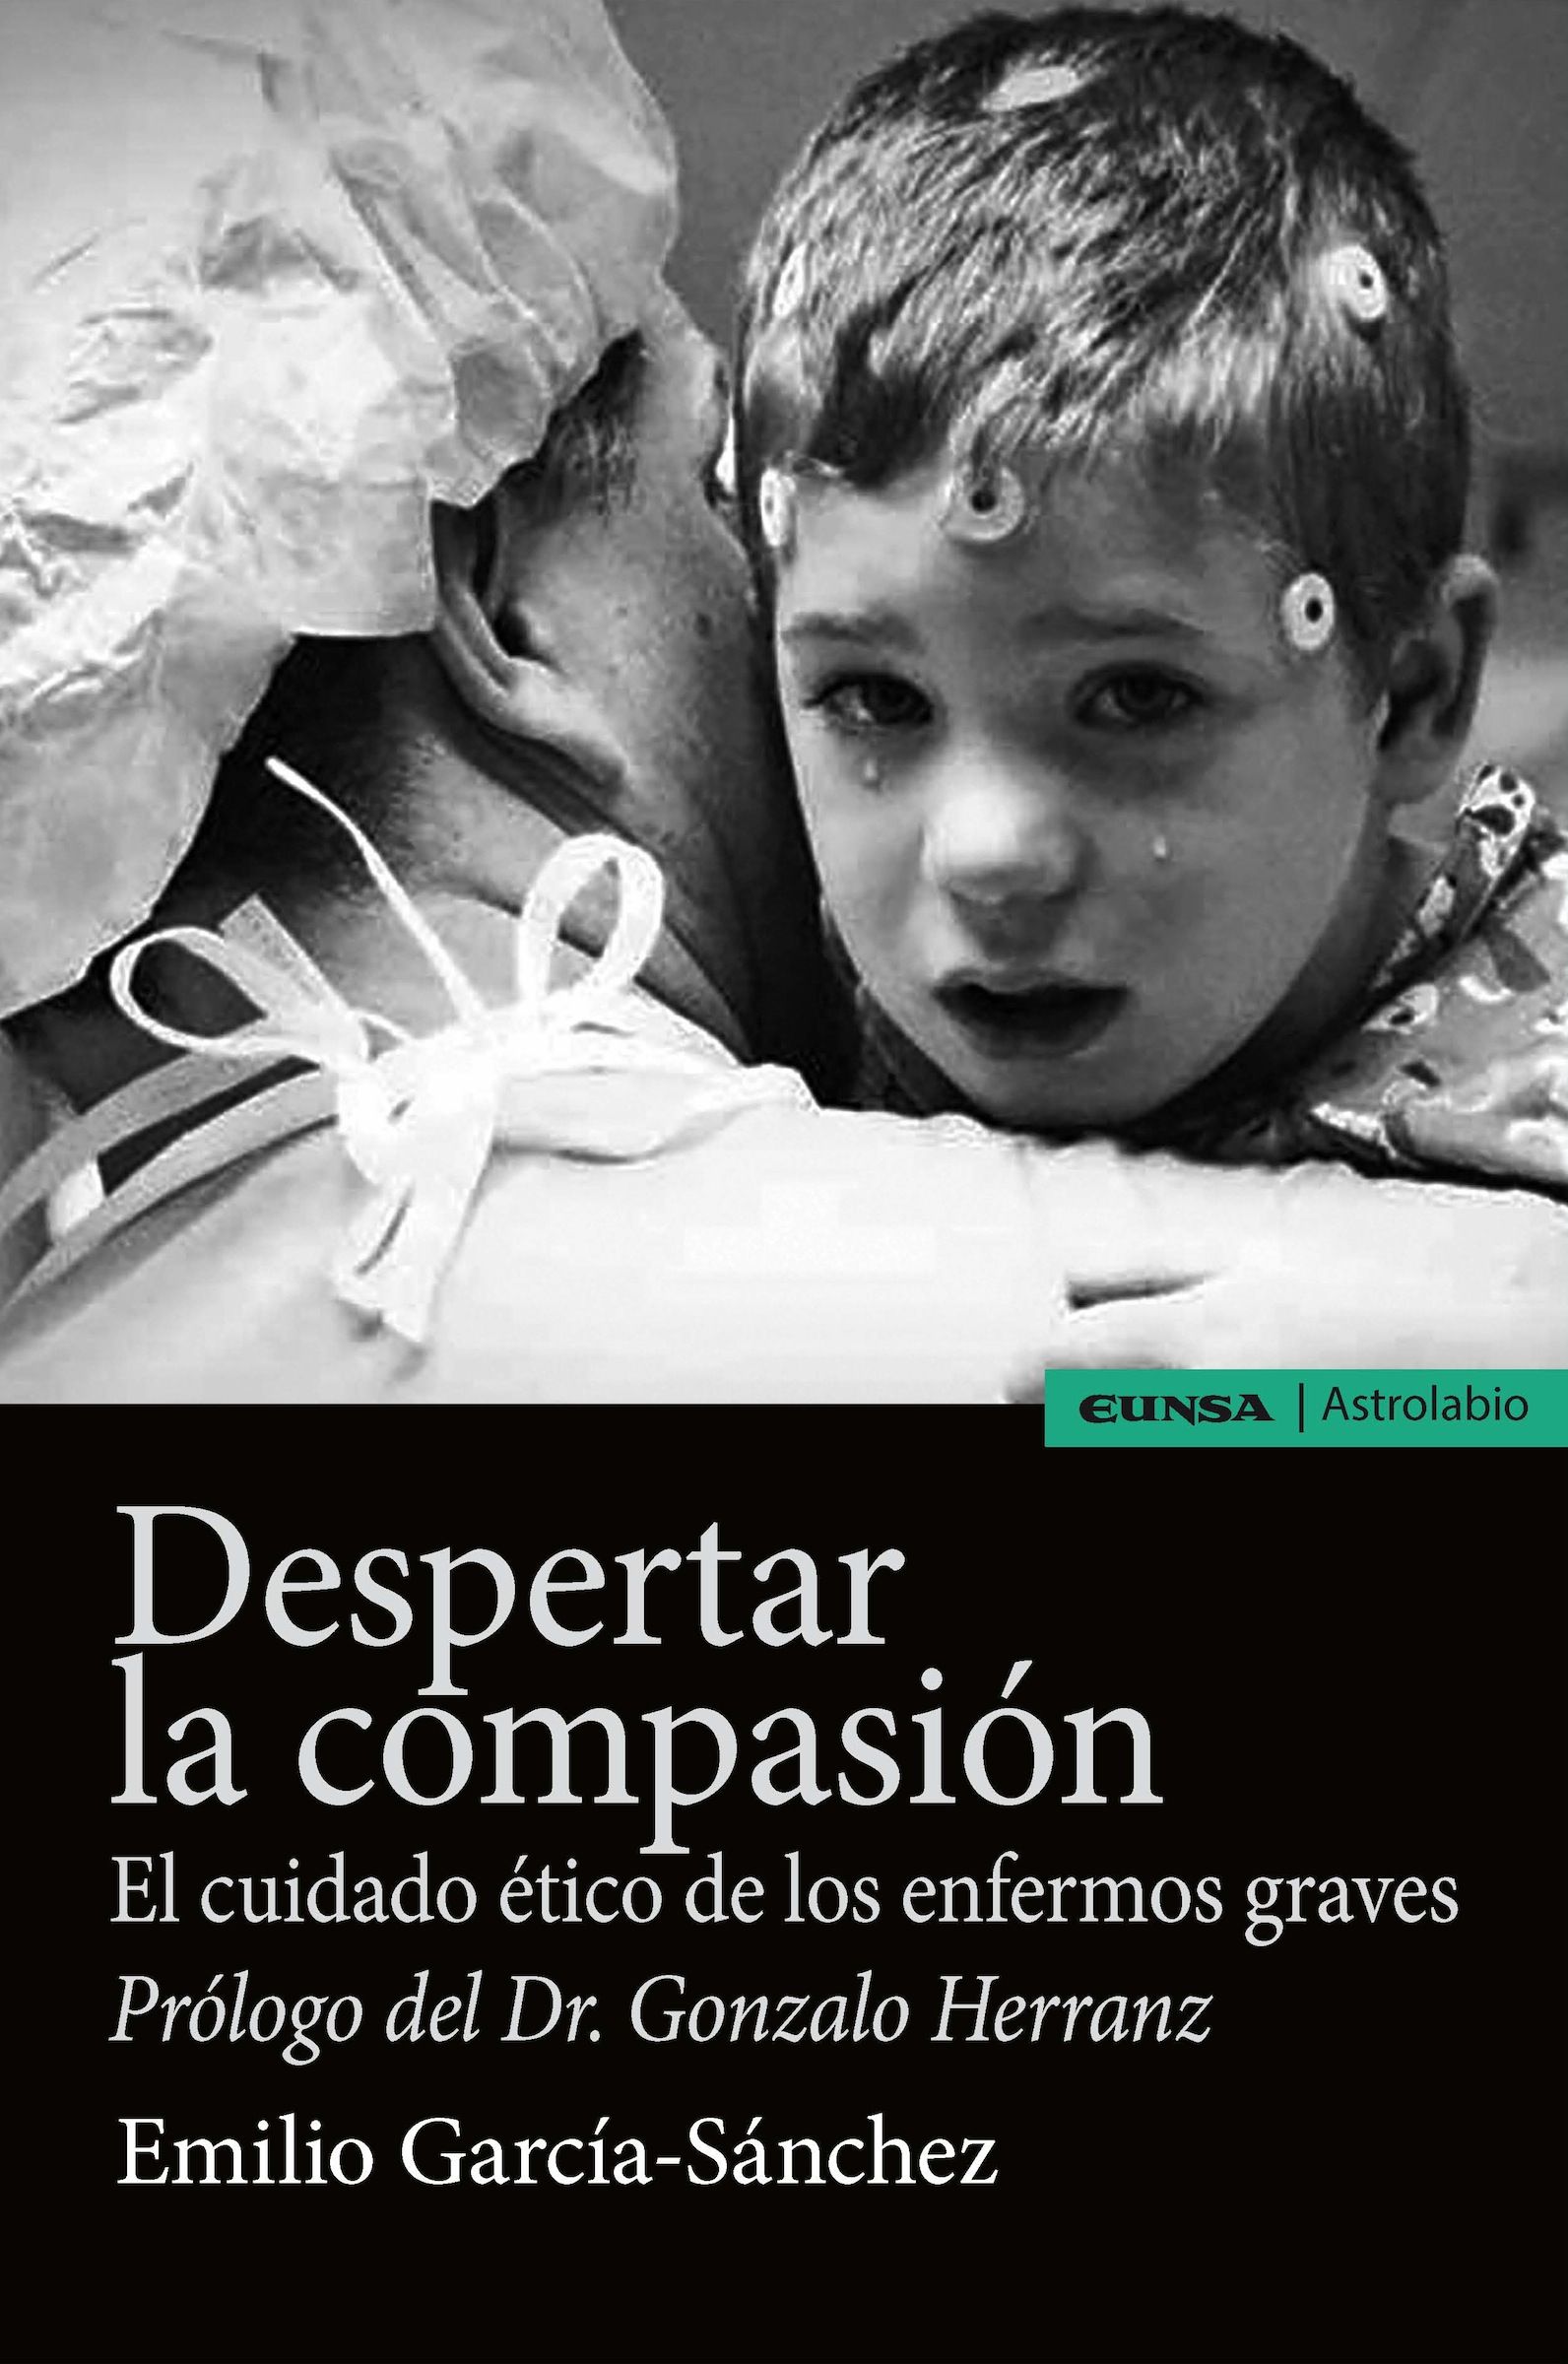 El libro “Despertar la compasión. El cuidado ético de los enfermos graves”, del profesor del CEU-UCH Emilio García Sánchez, ha sido editado por EUNSA, en la colección Astrolabio.